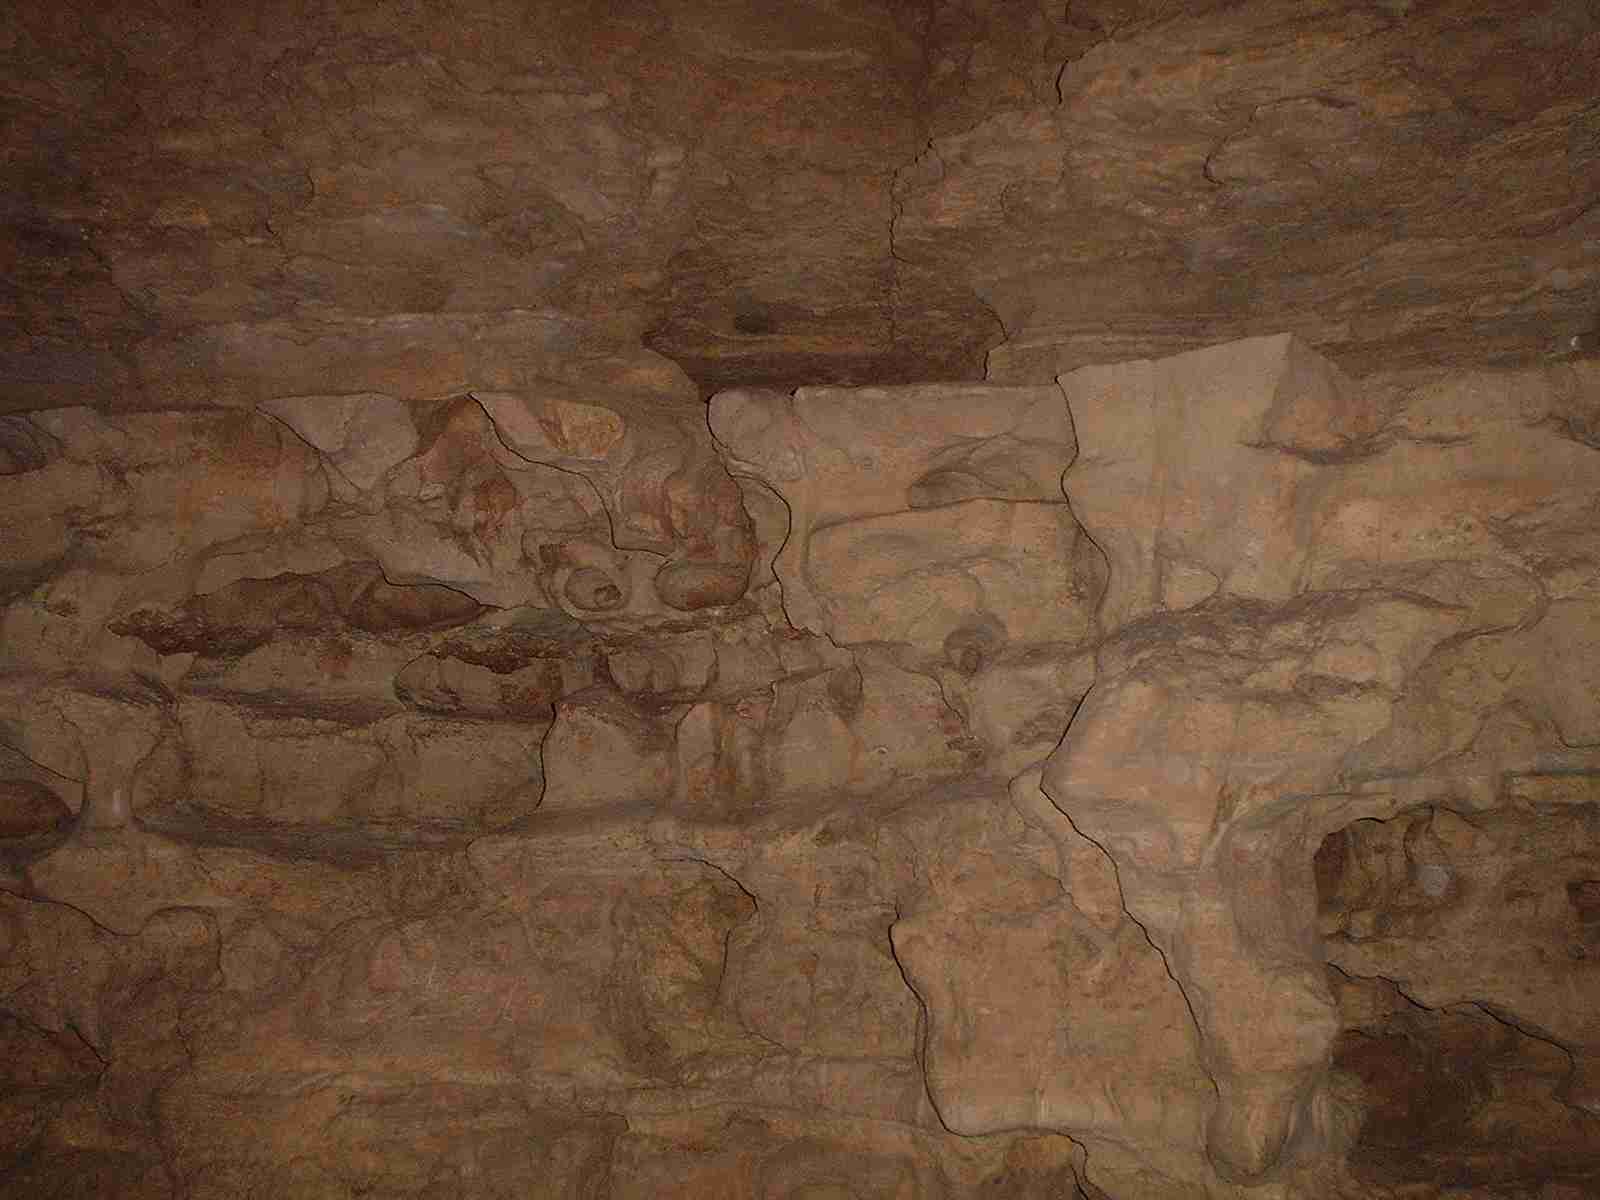 Plain cavern walls